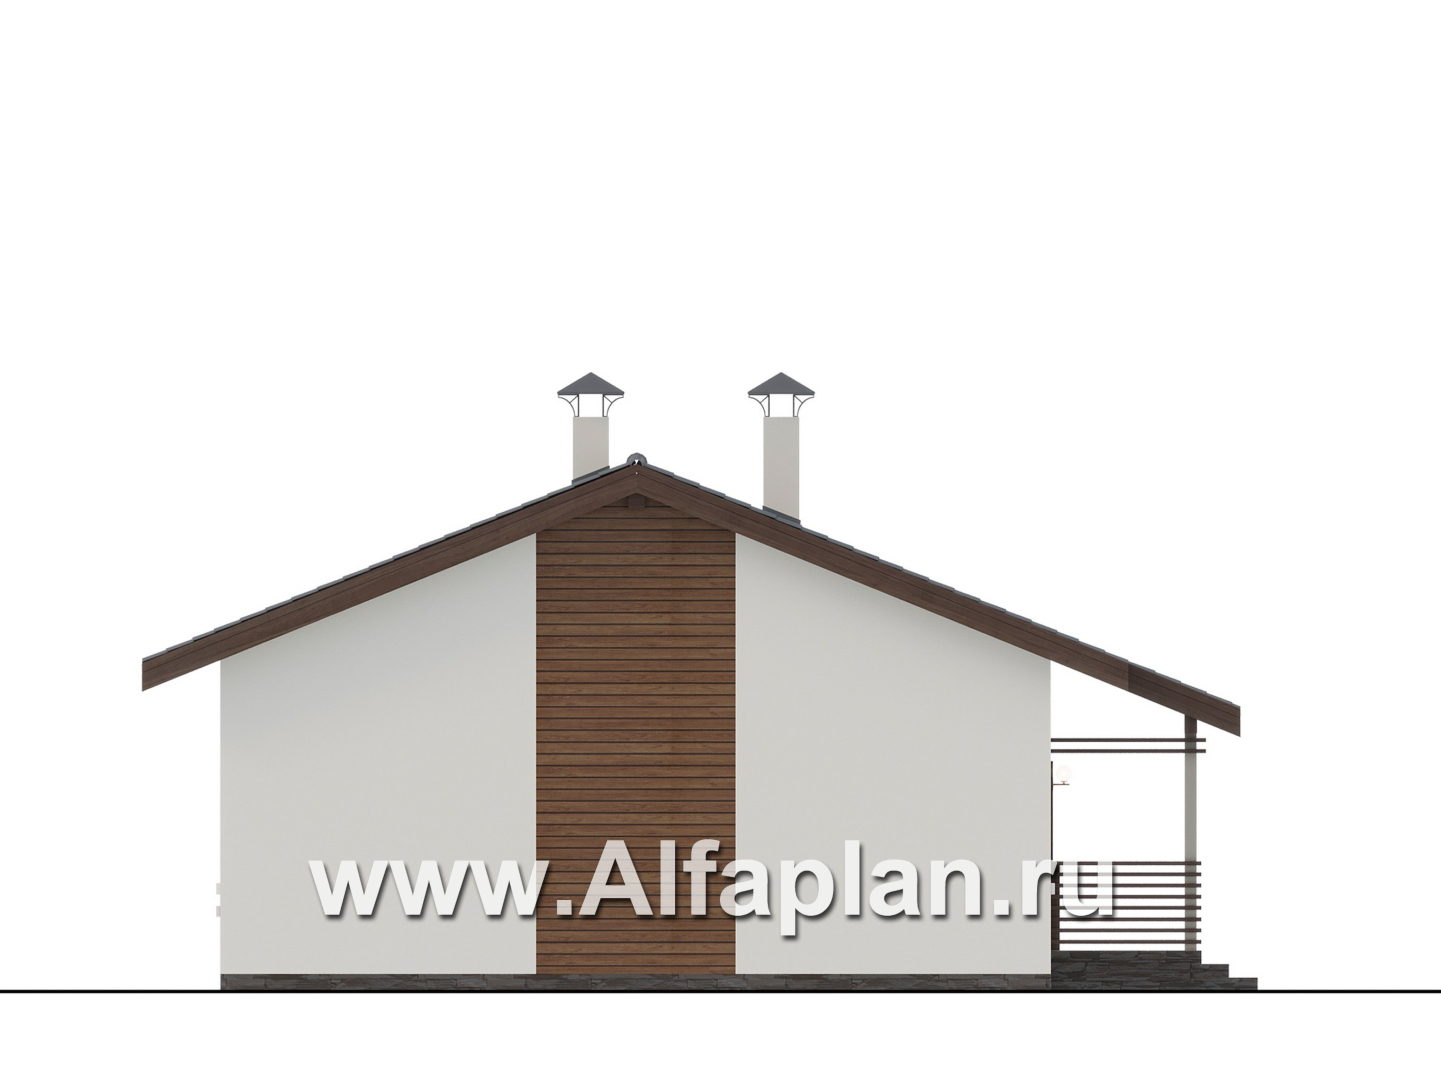 Проекты домов Альфаплан - "Пикколо" - экономичный одноэтажный коттедж из гзобетонных блоков - изображение фасада №3